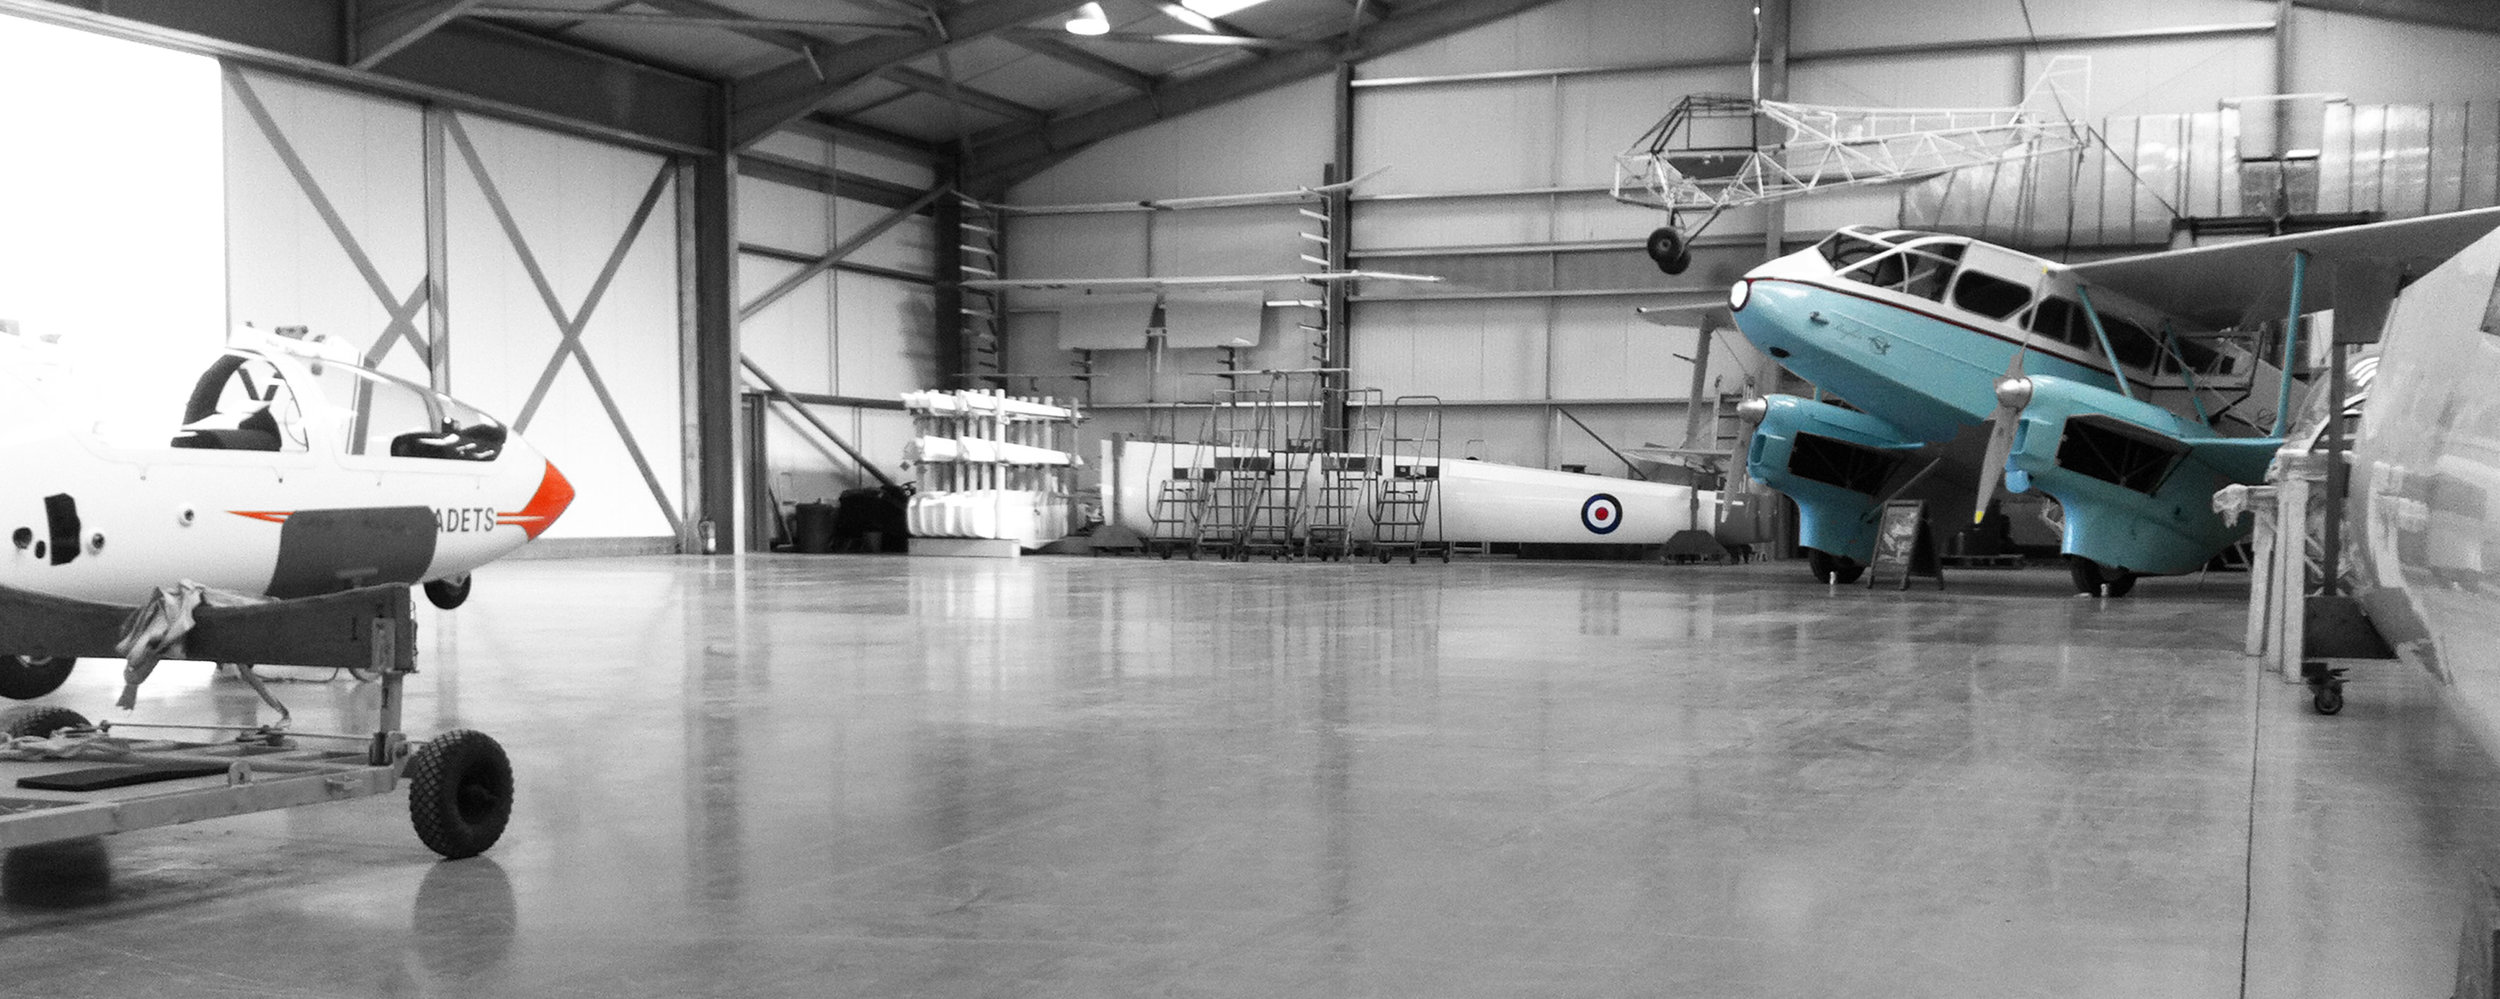 Banner-clear-hangar.jpg